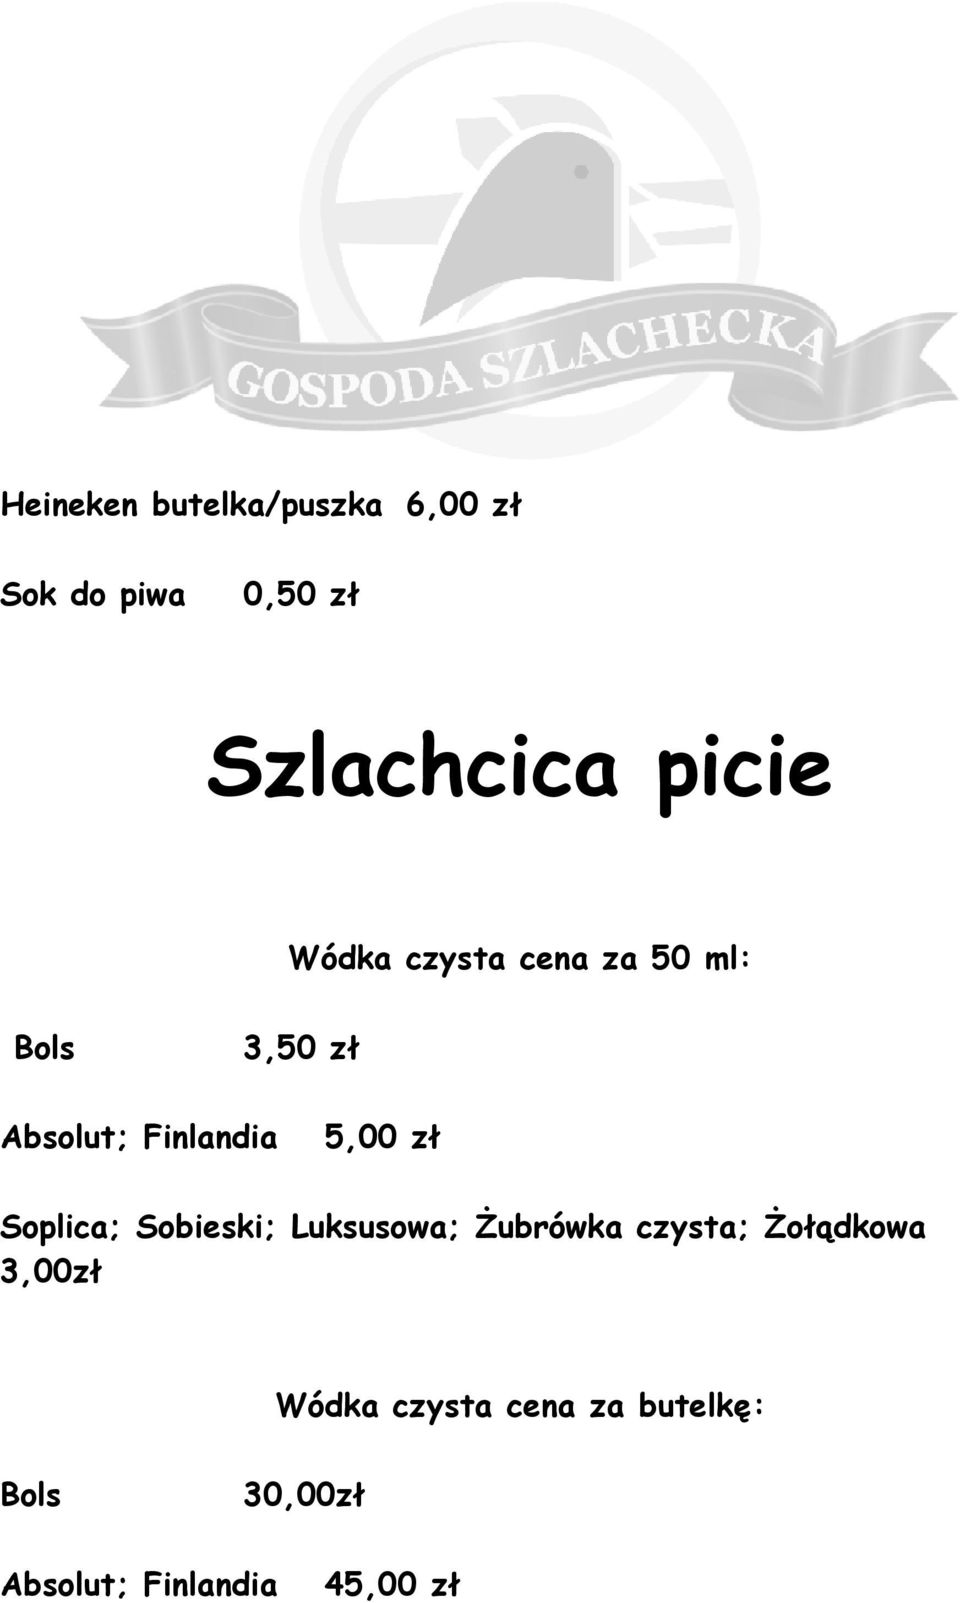 5,00 zł Soplica; Sobieski; Luksusowa; Żubrówka czysta; Żołądkowa